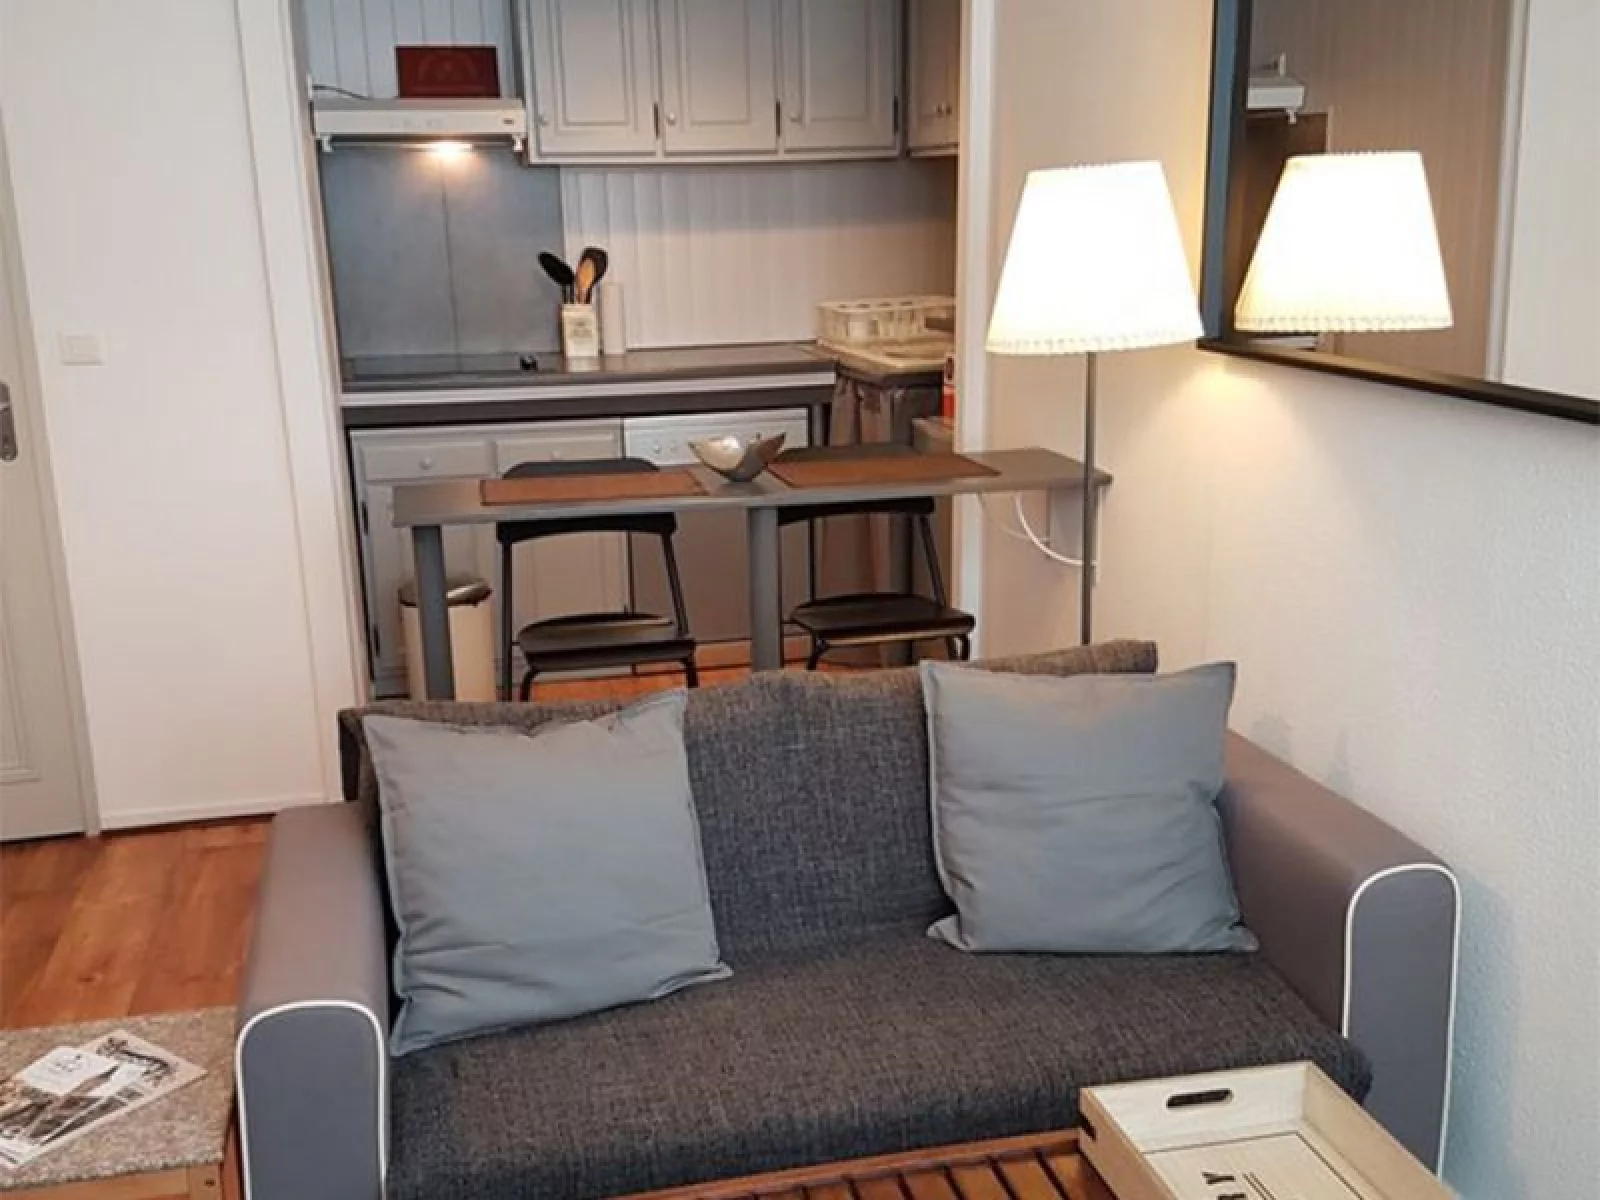 Vente appartement meublé 2 pièces (Bordeaux - Victoire)